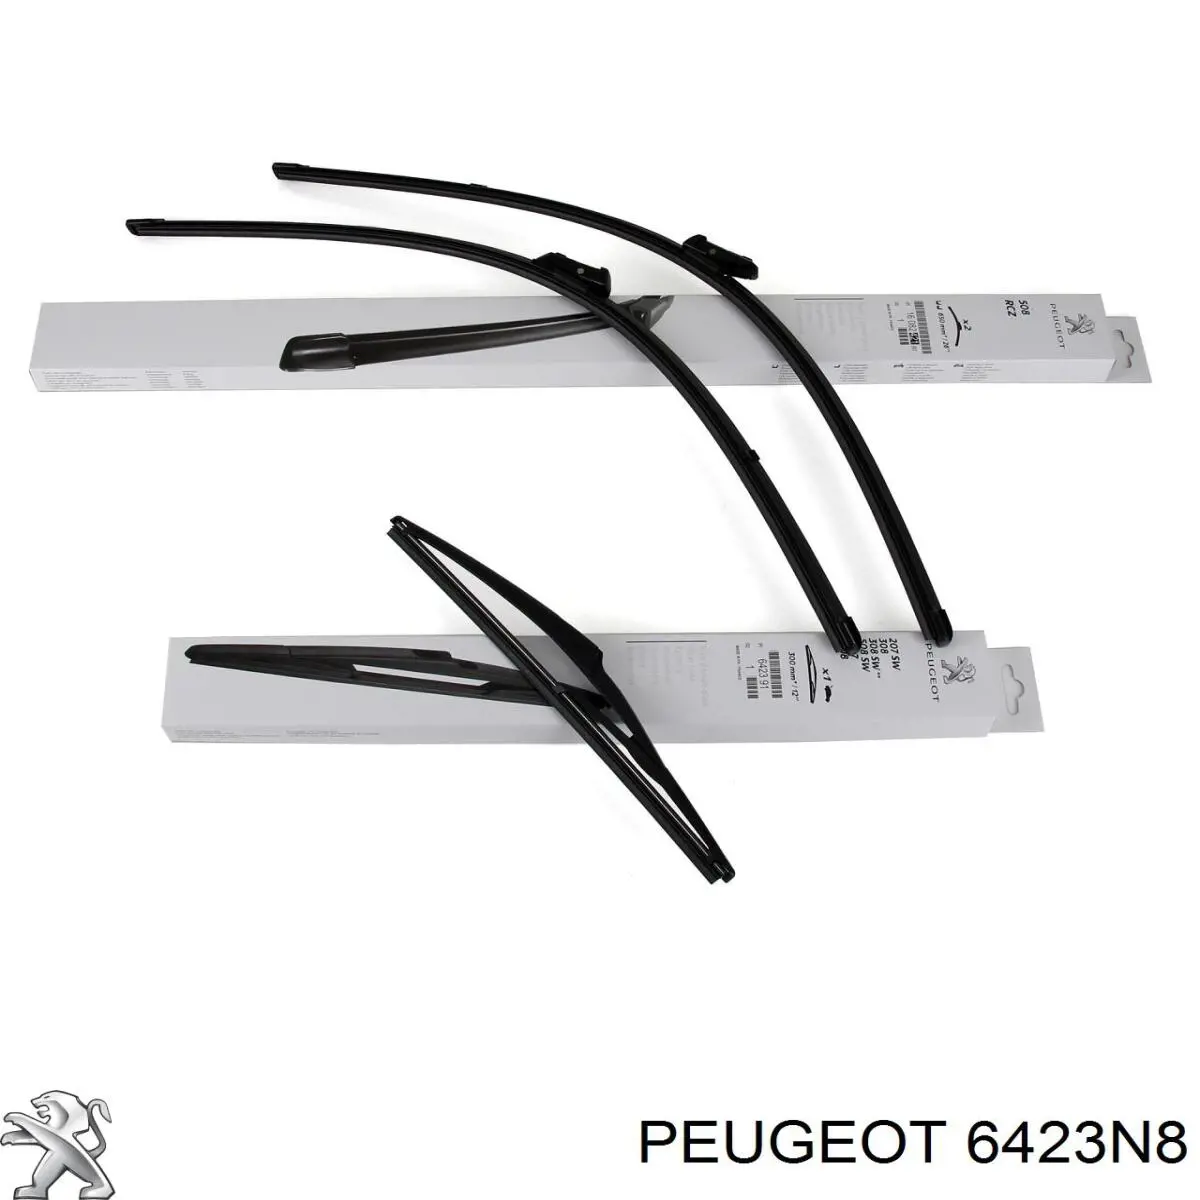 6423N8 Peugeot/Citroen щетка-дворник лобового стекла, комплект из 2 шт.